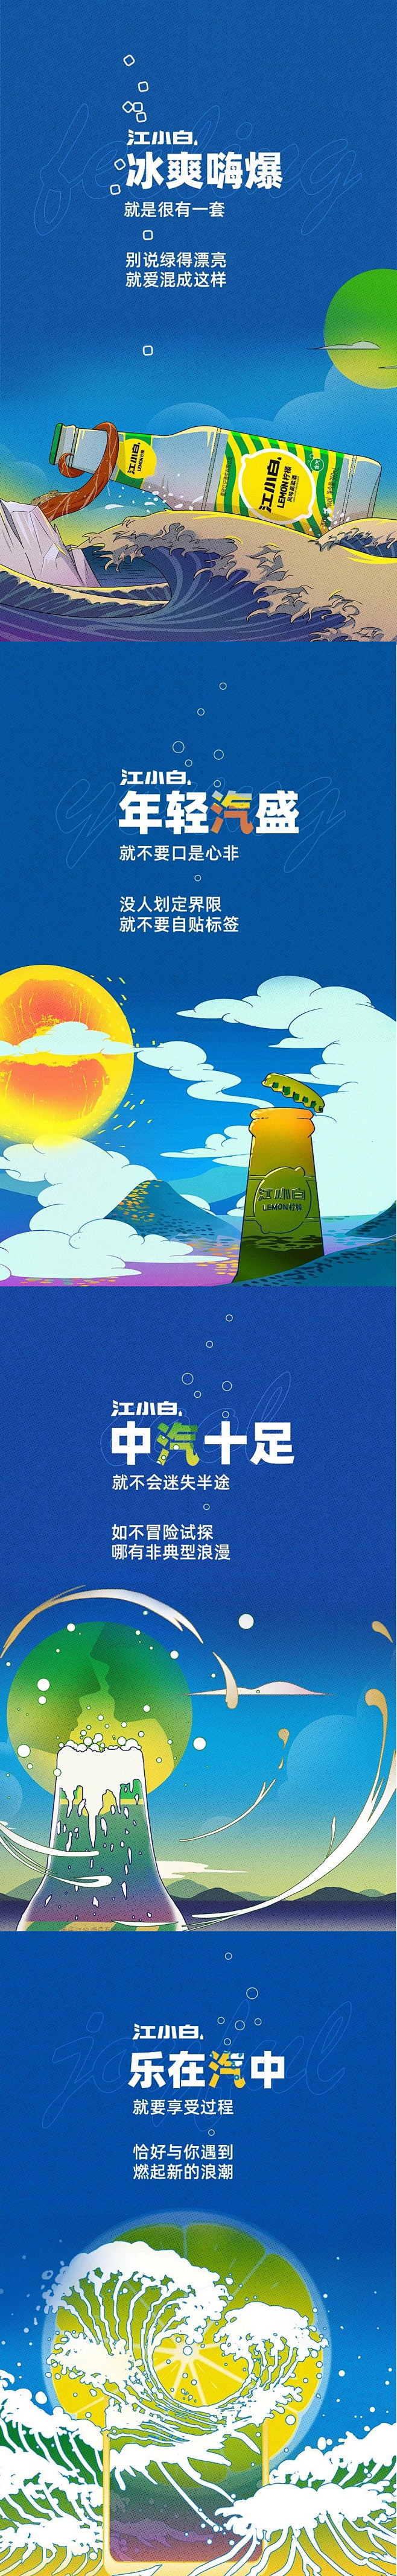 江小白插画海报日式风格